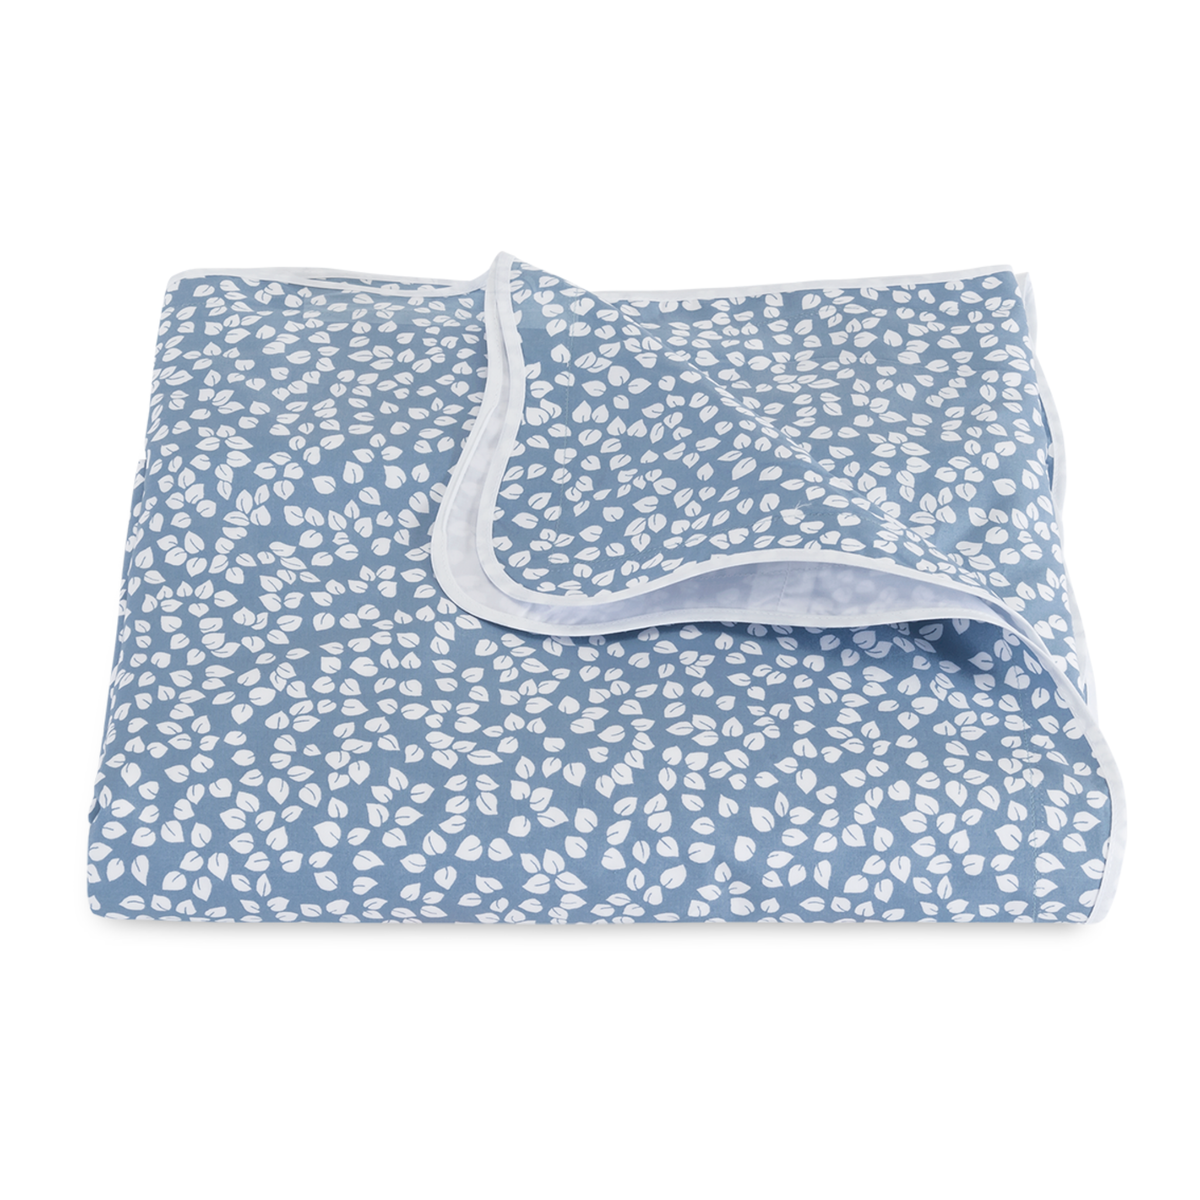  Folded Duvet Cover of Matouk Margot Bedding in Hazy Blue Reverse Color